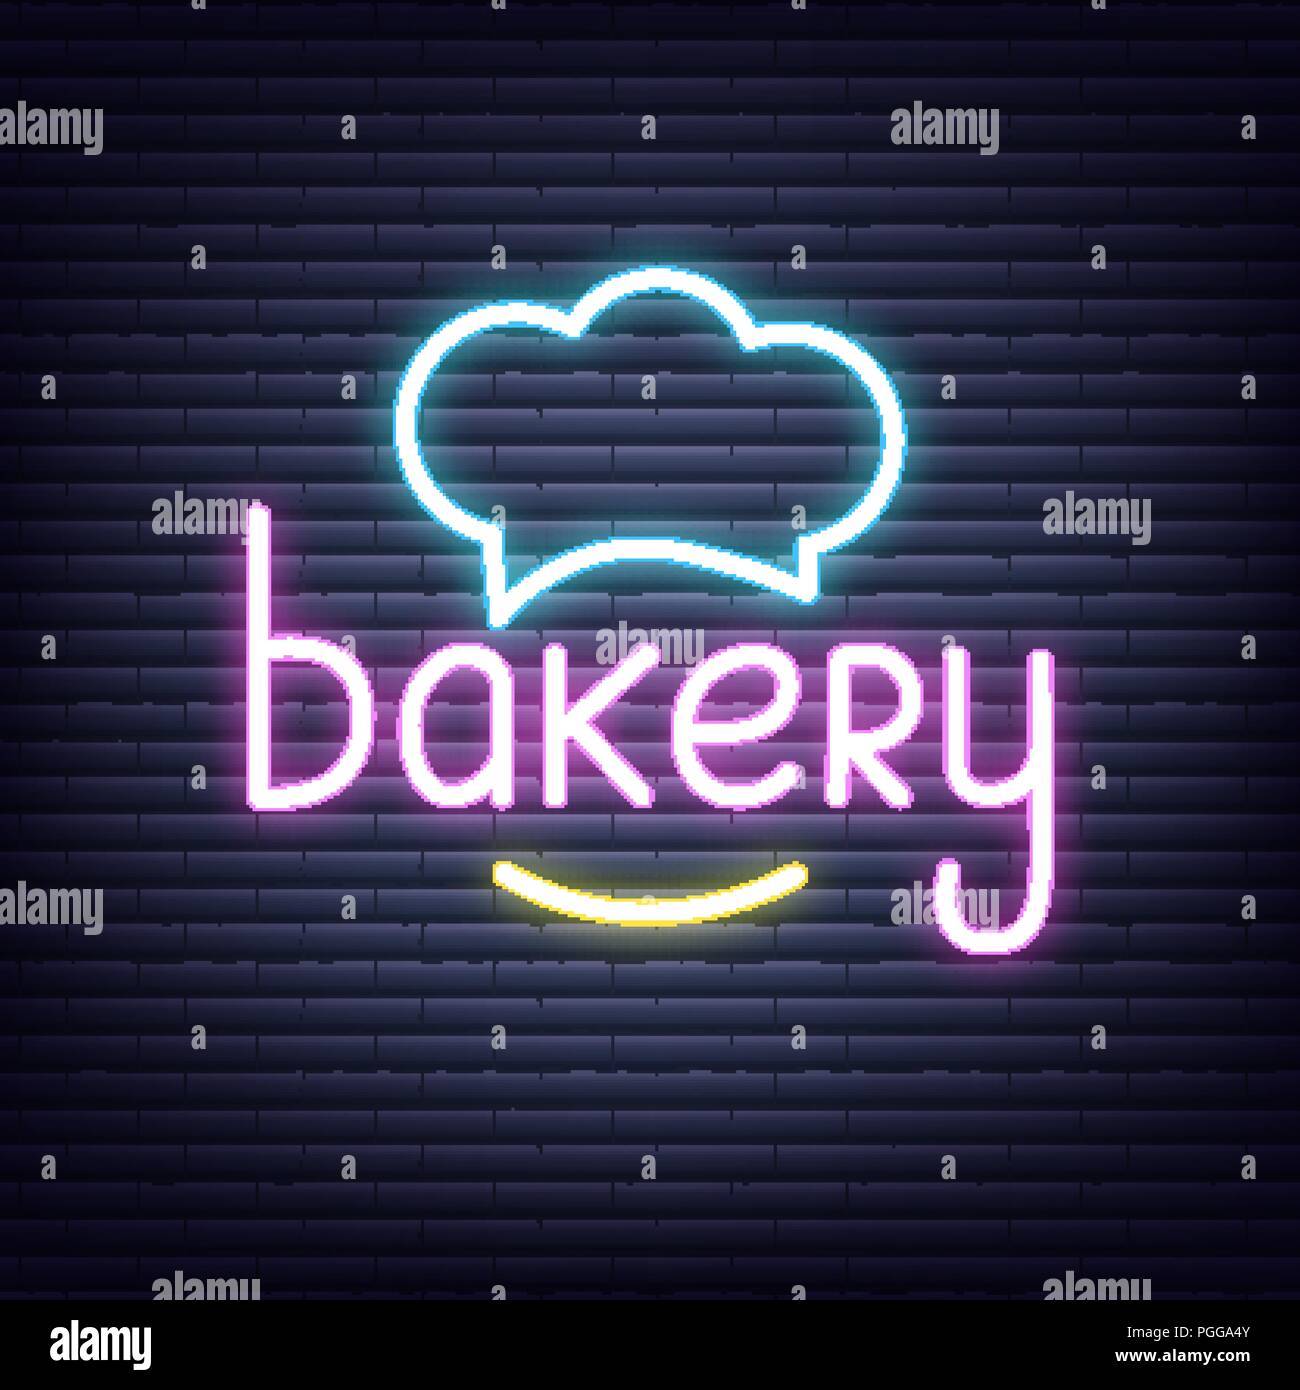 Bakery. Bakery neon sign. Neon glowing signboard banner design Stock Vector